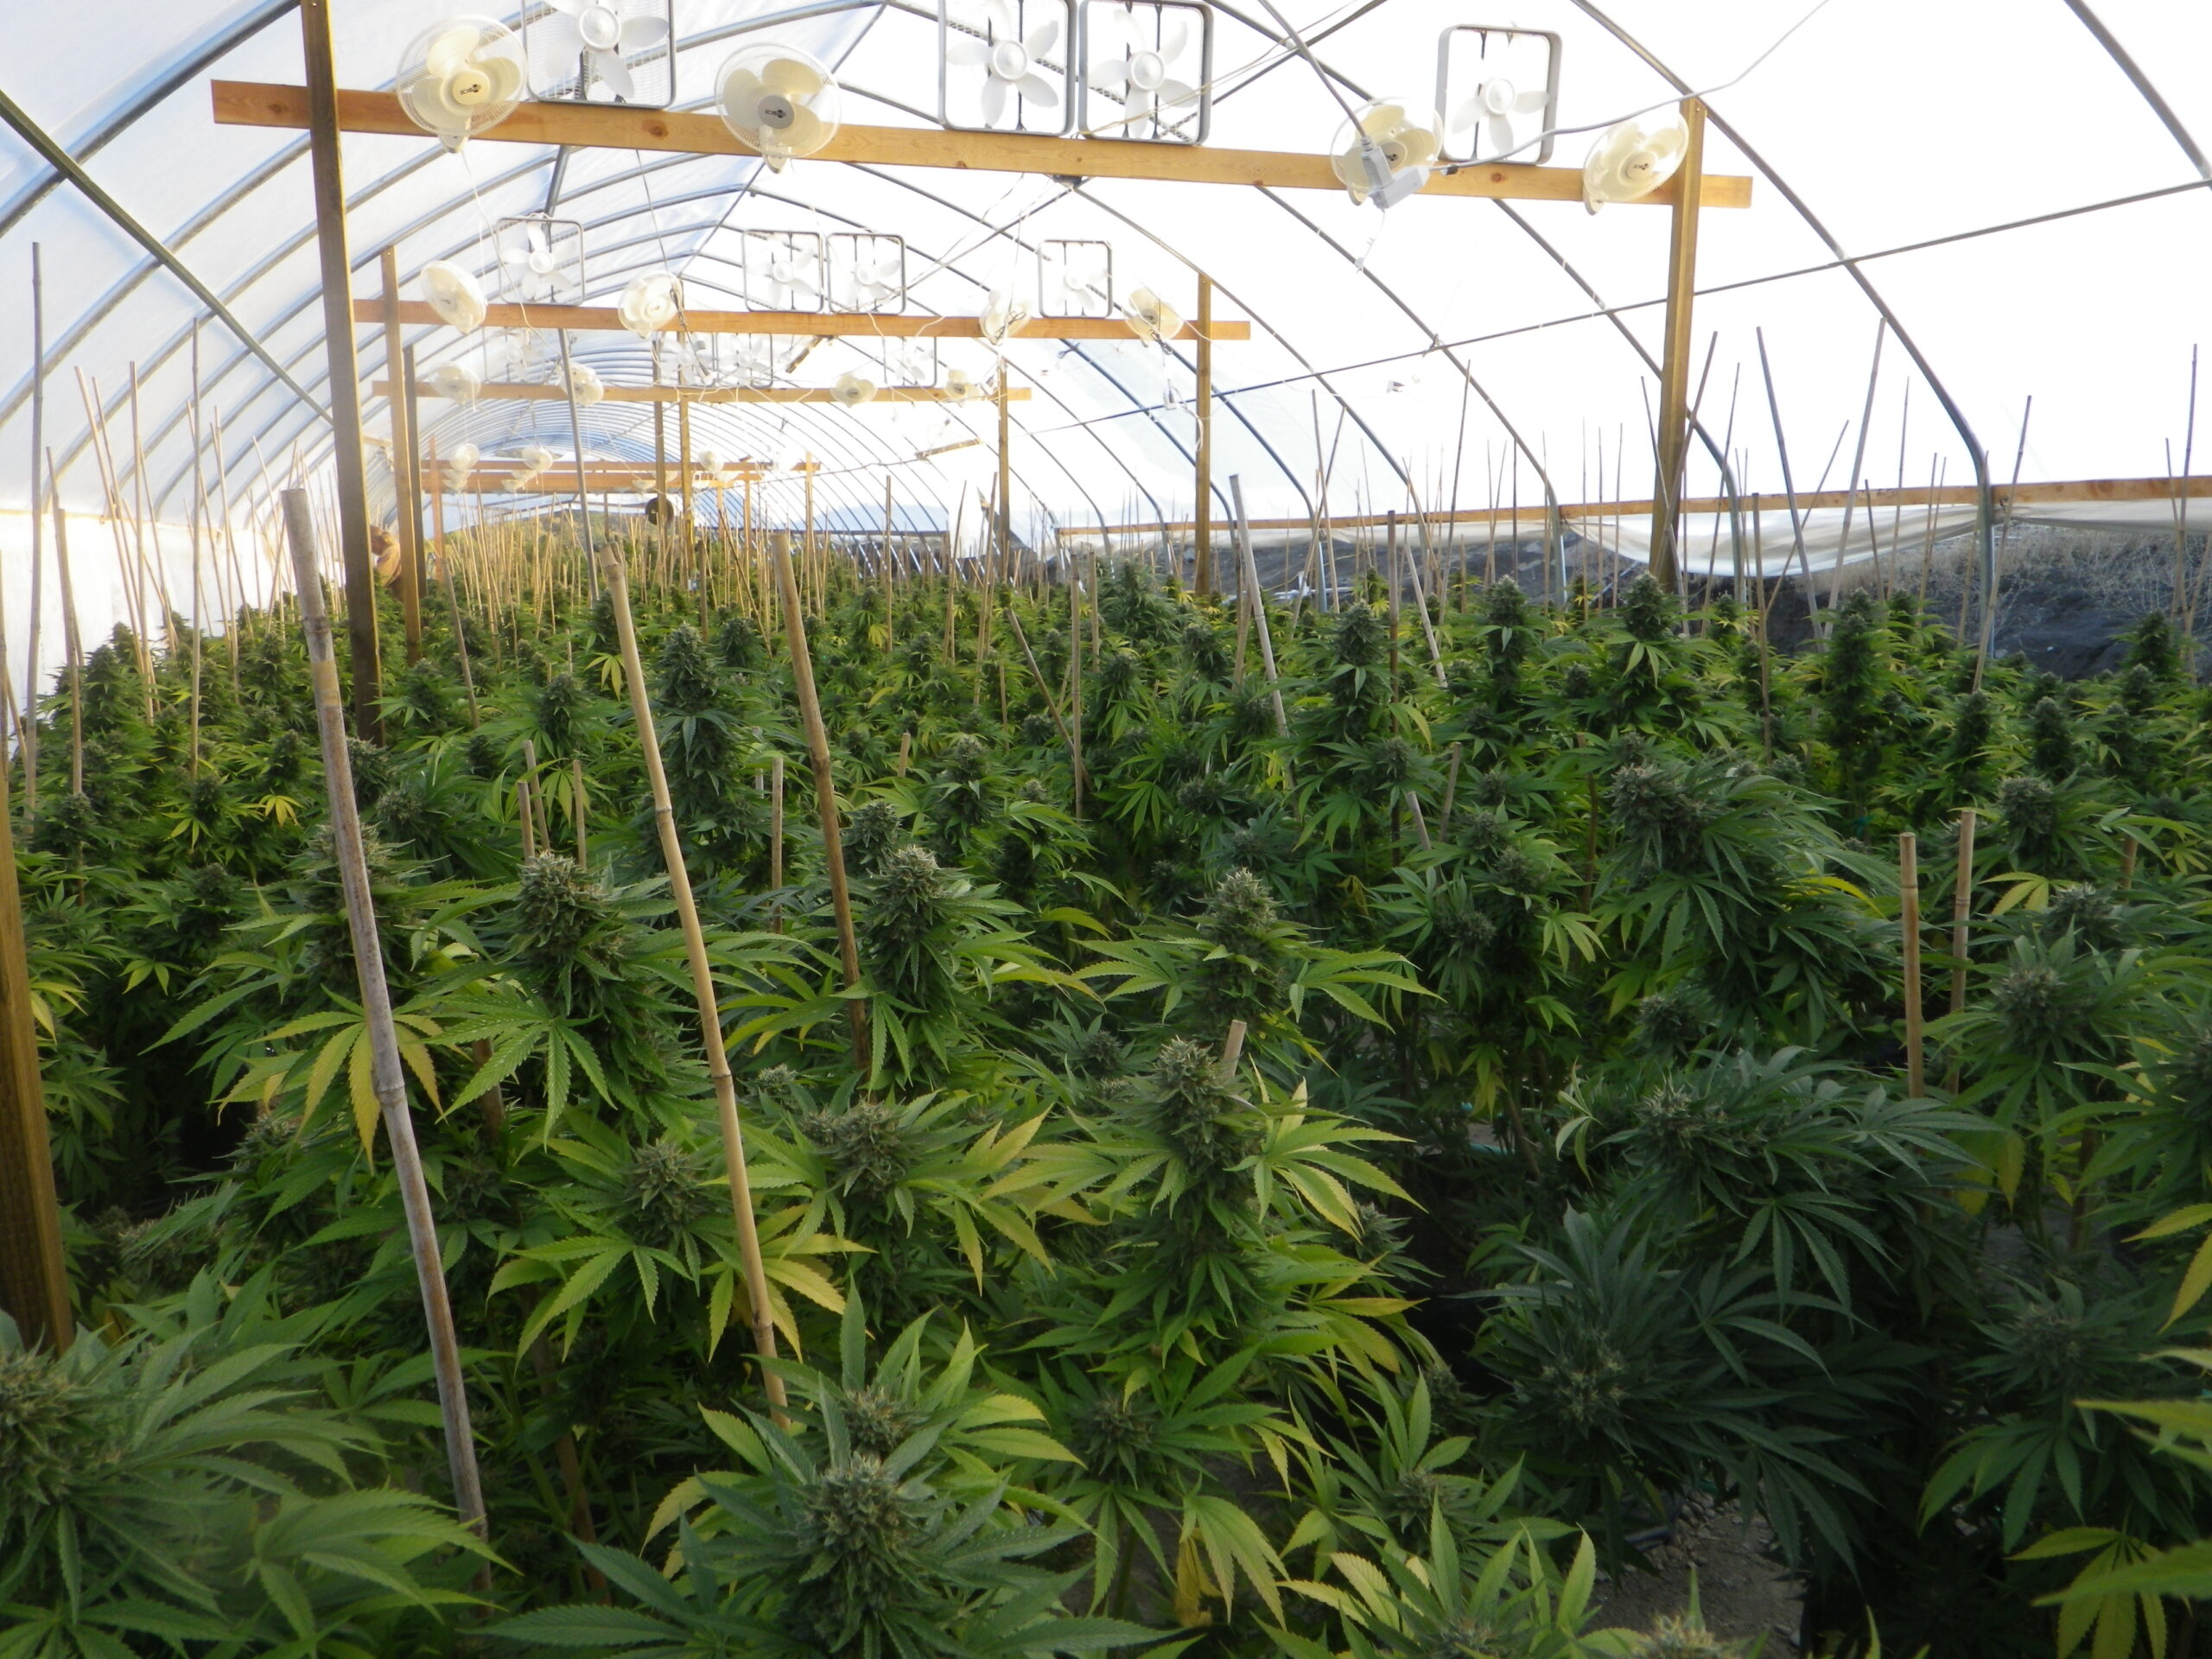 Considerazioni chiave per costruire una serra di cannabis redditizia